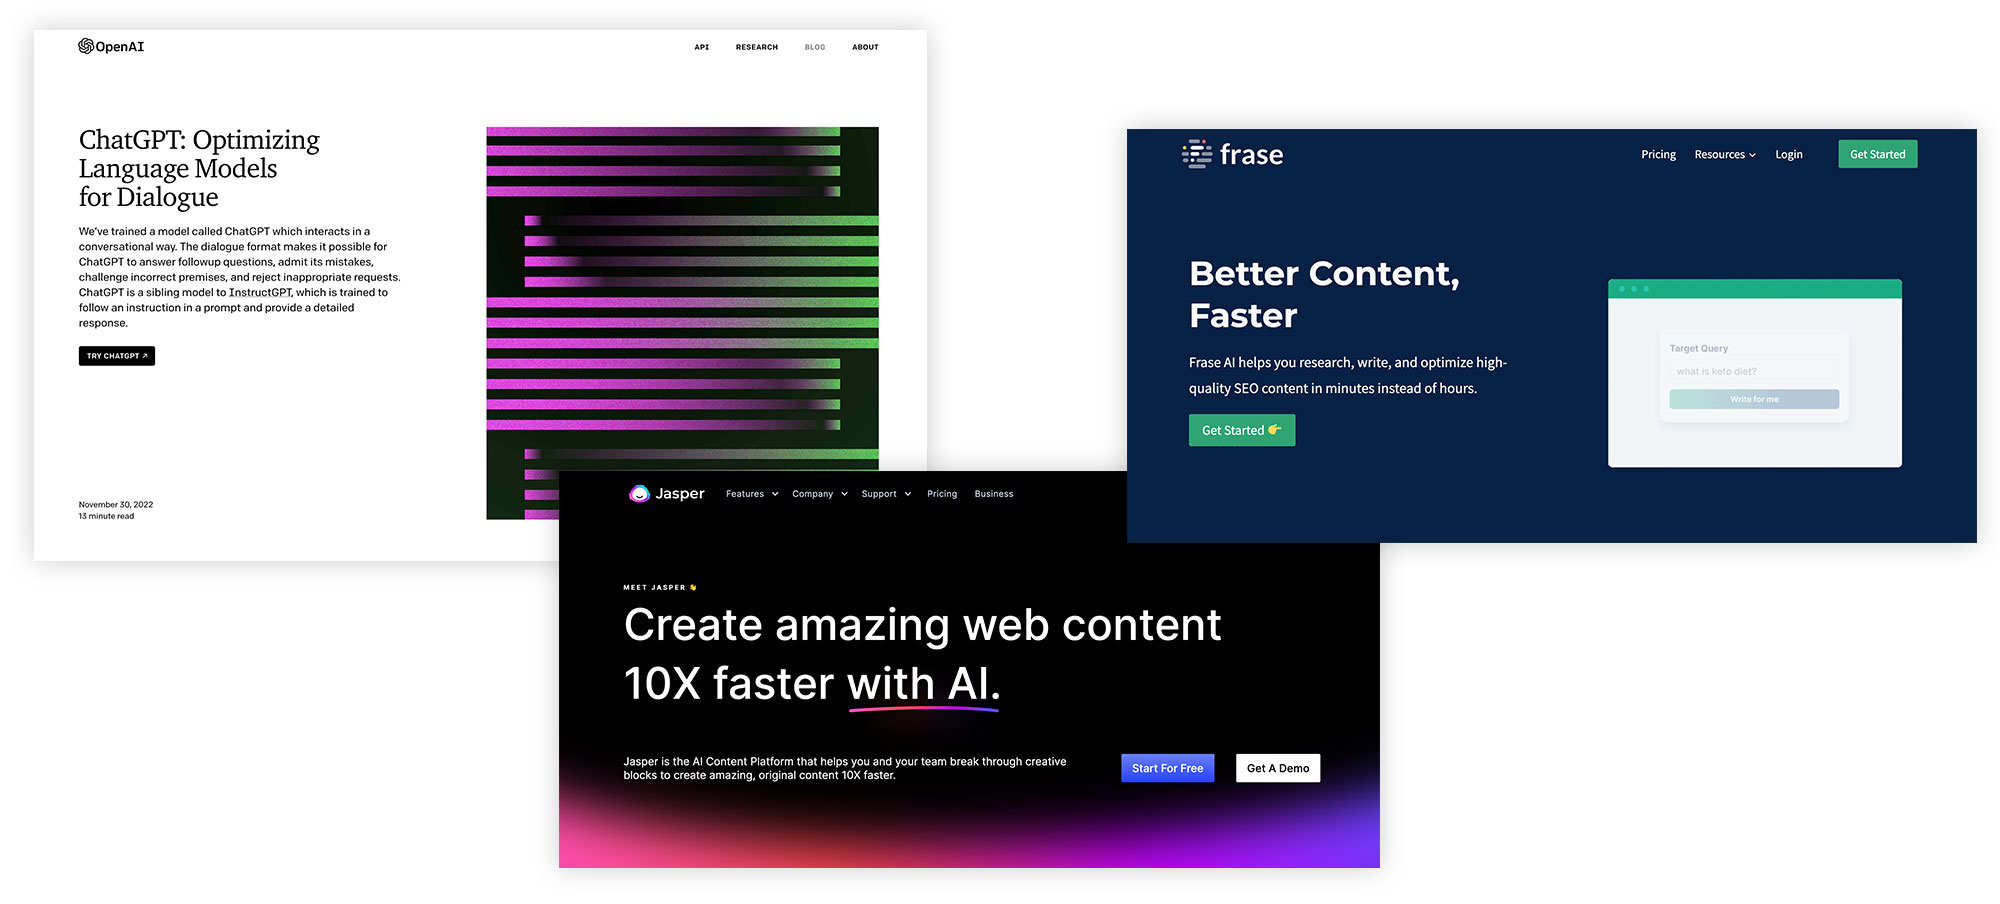 KI im Webdesign: Die Zukunft der Inhalte & Gestaltung von Websites 3